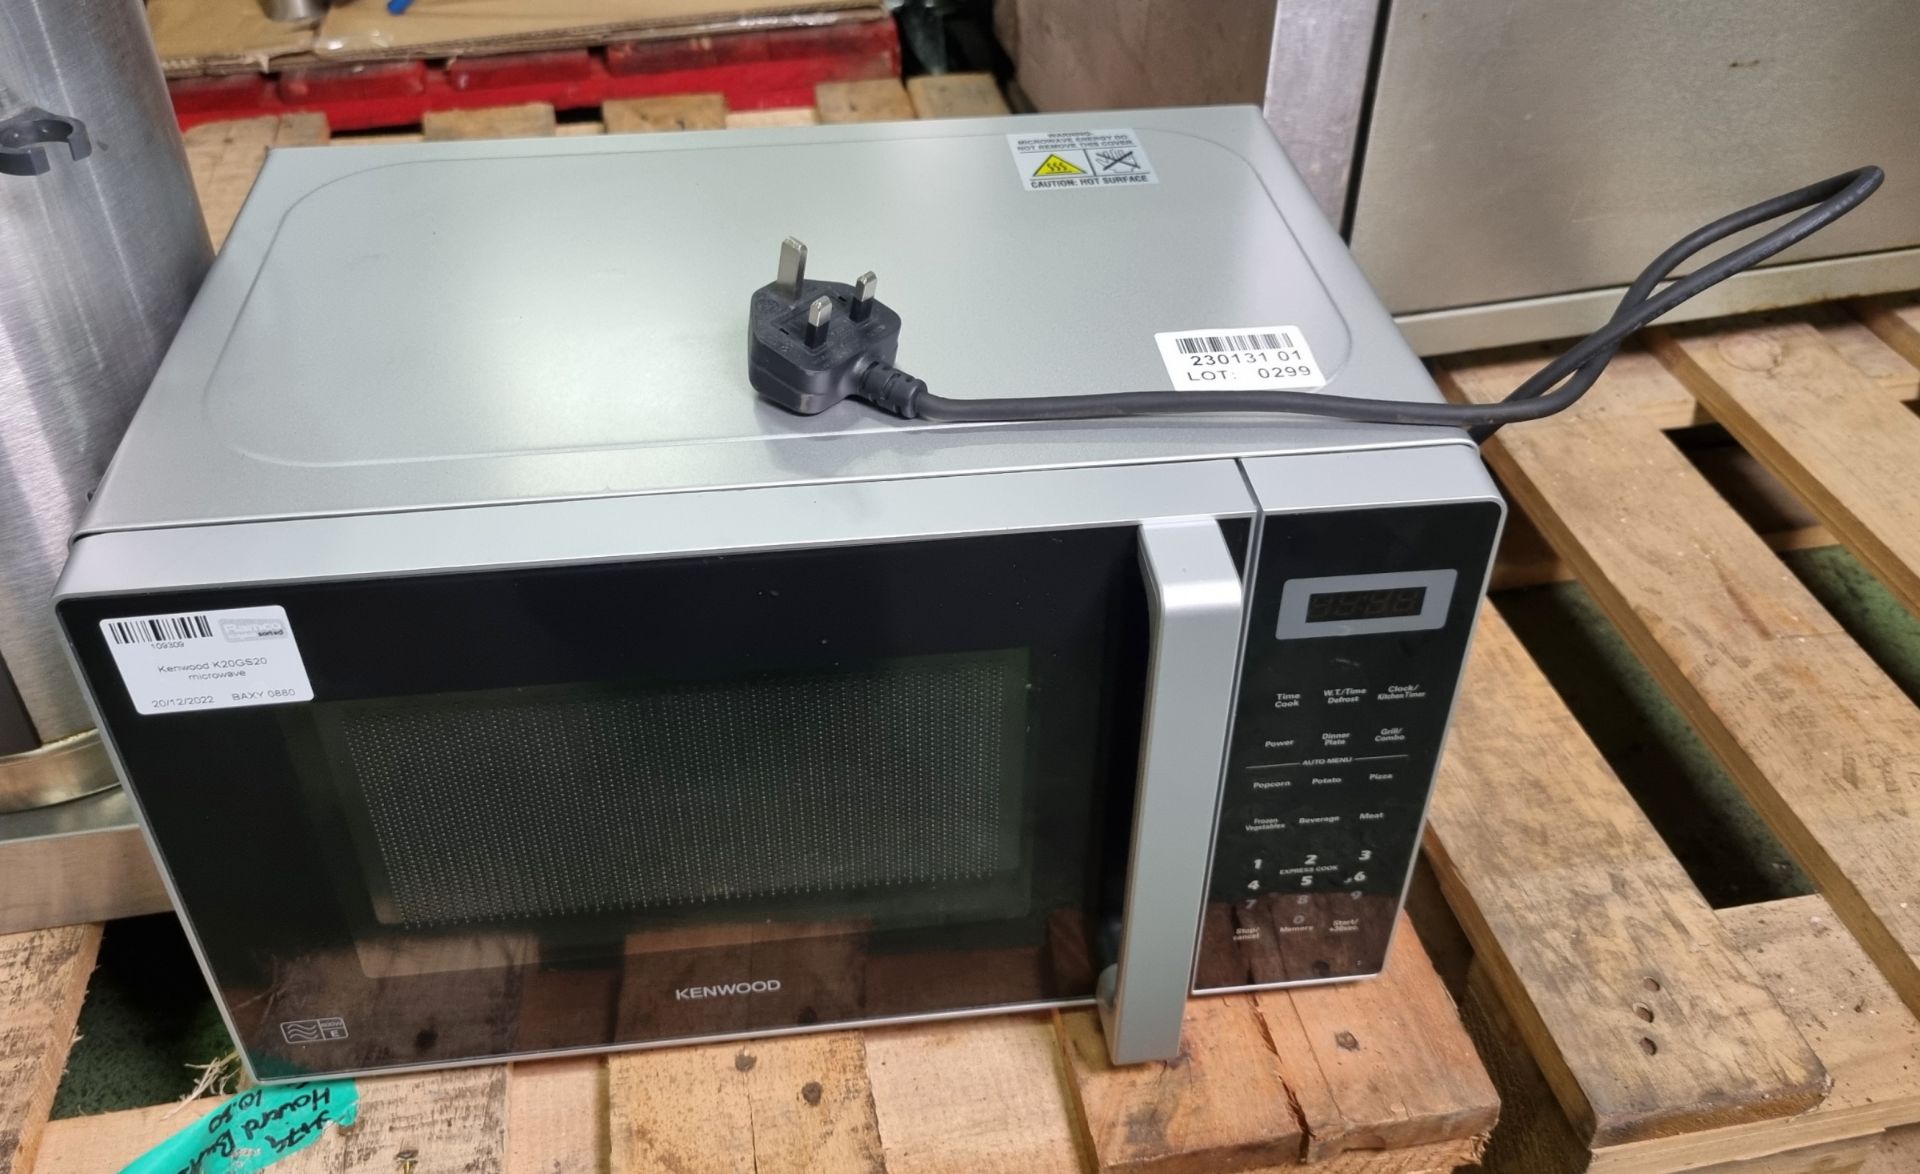 Kenwood K20GS20 microwave - Image 2 of 4